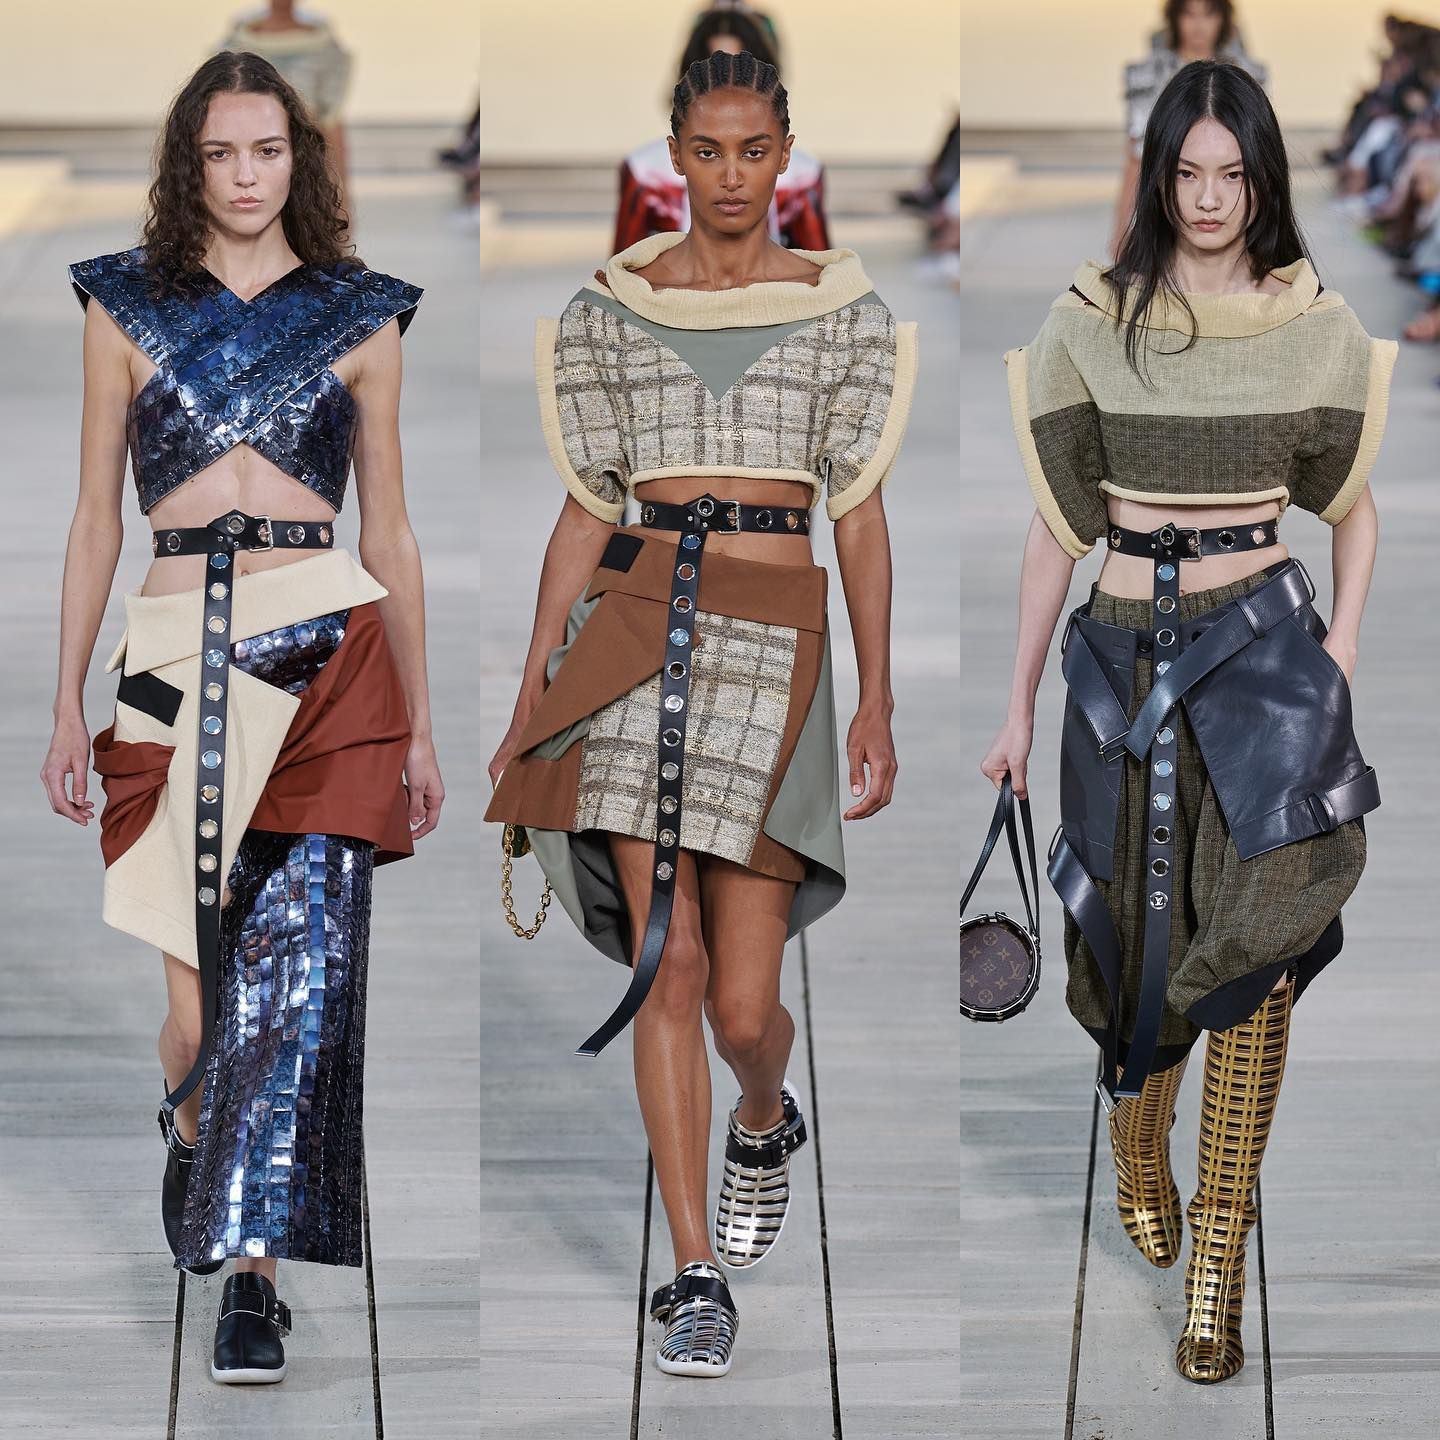 Moda, música y maravillas en la pasarela de Louis Vuitton